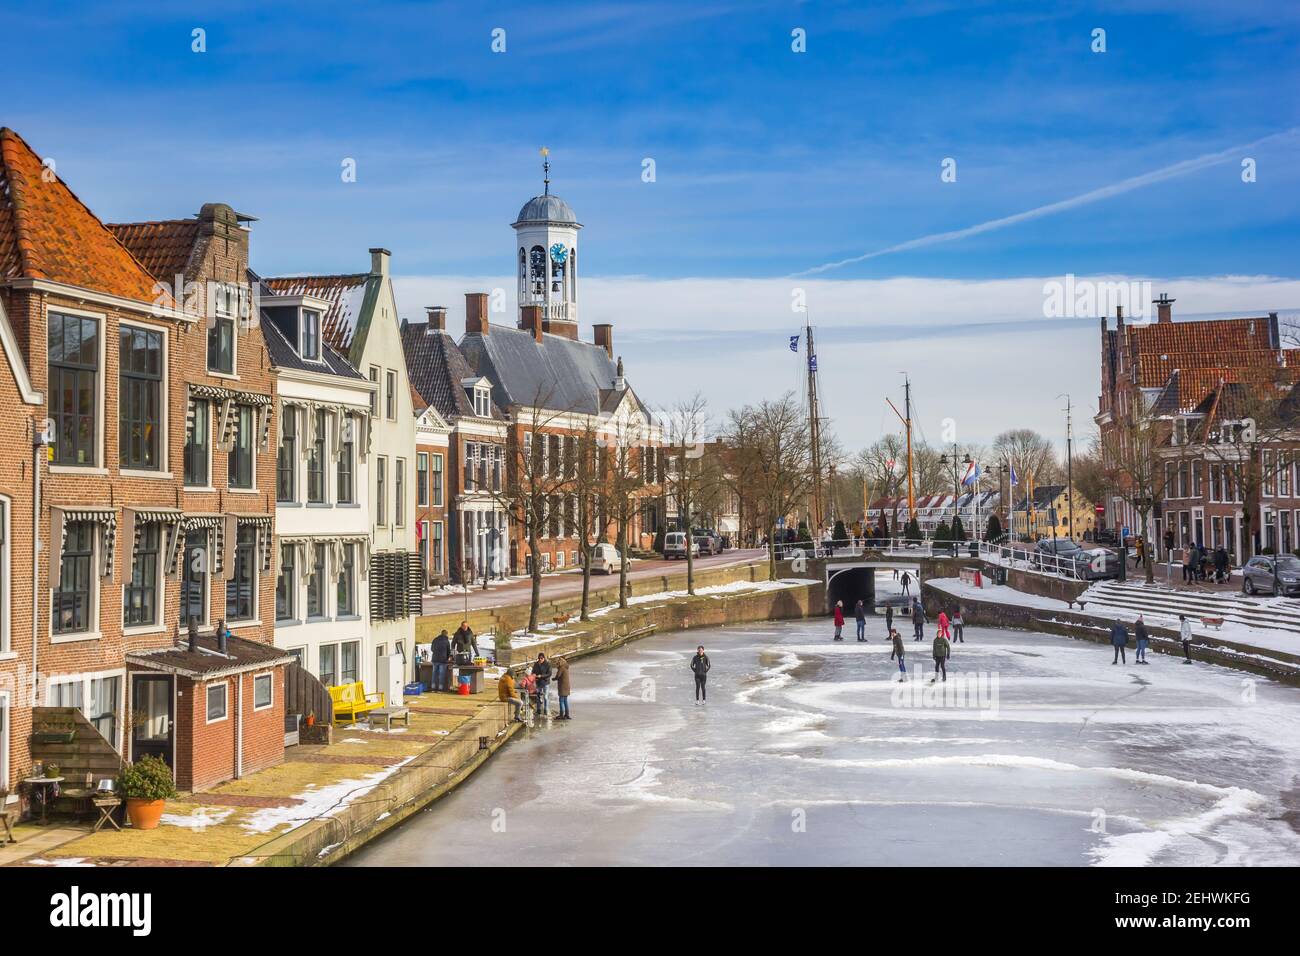 Vecchie case e municipio in un tipico inverno olandese scena con ghiaccio e persone che pattinano Foto Stock